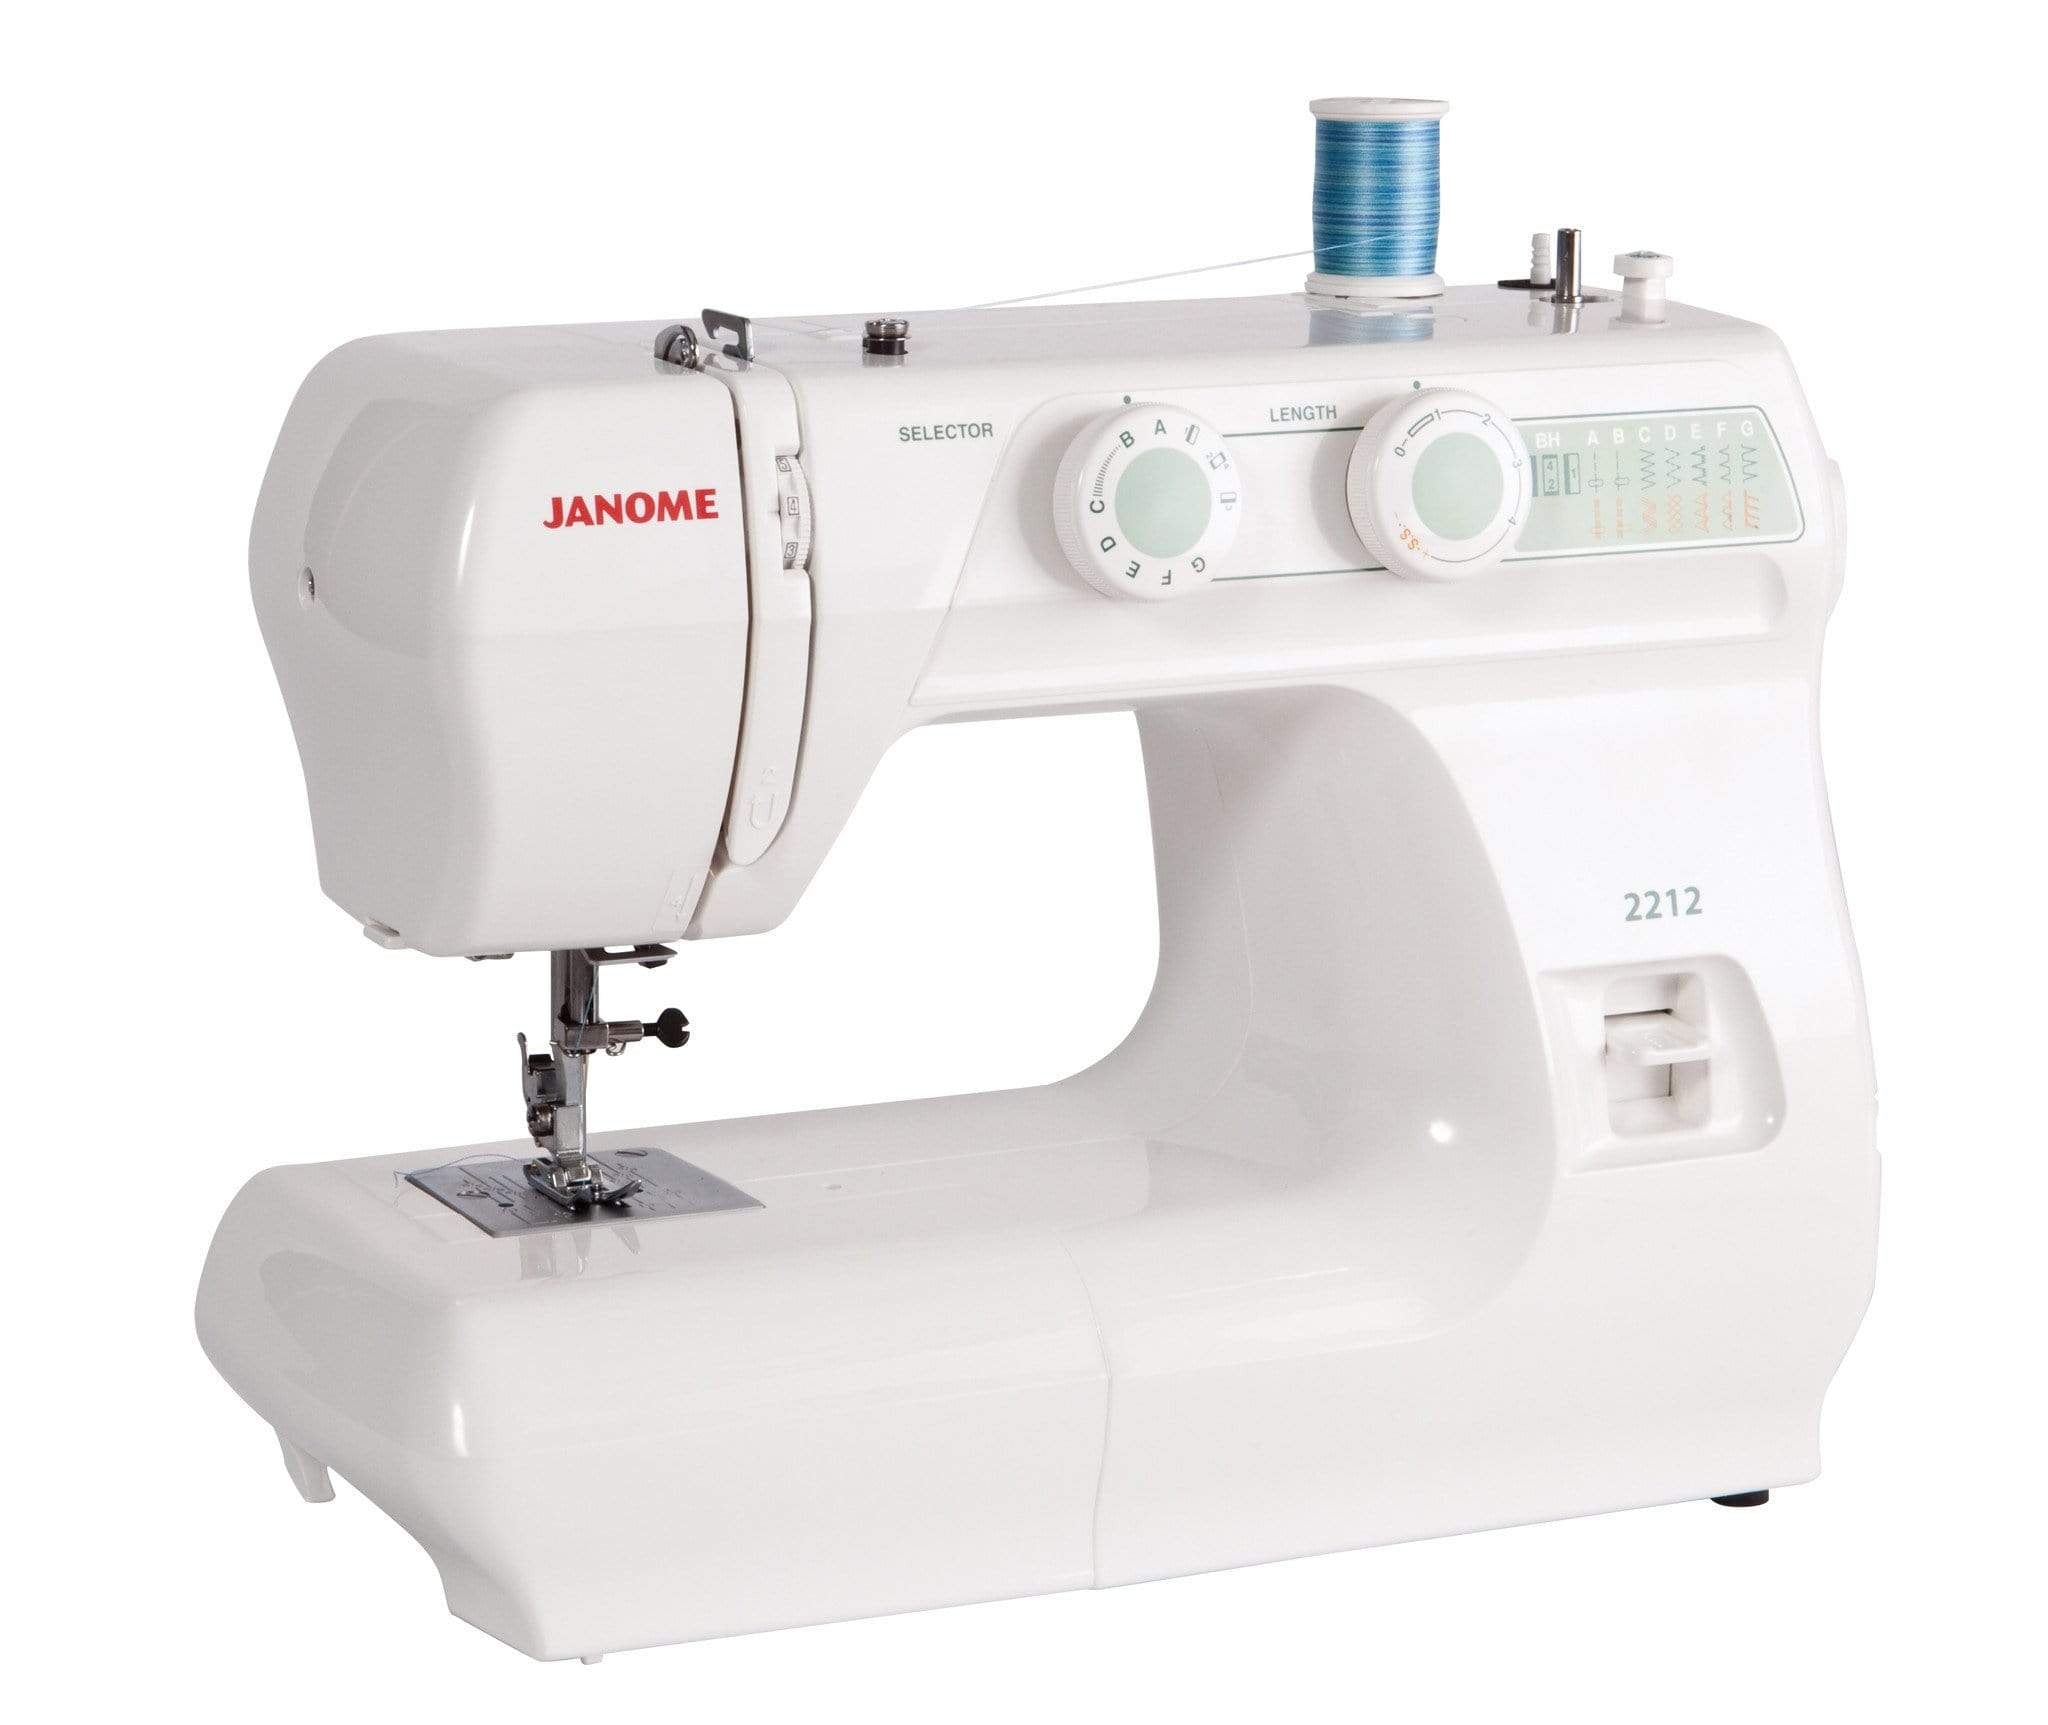 Janome Mechanical Sewing Machine Janome 2212 Mechanical Sewing Machine